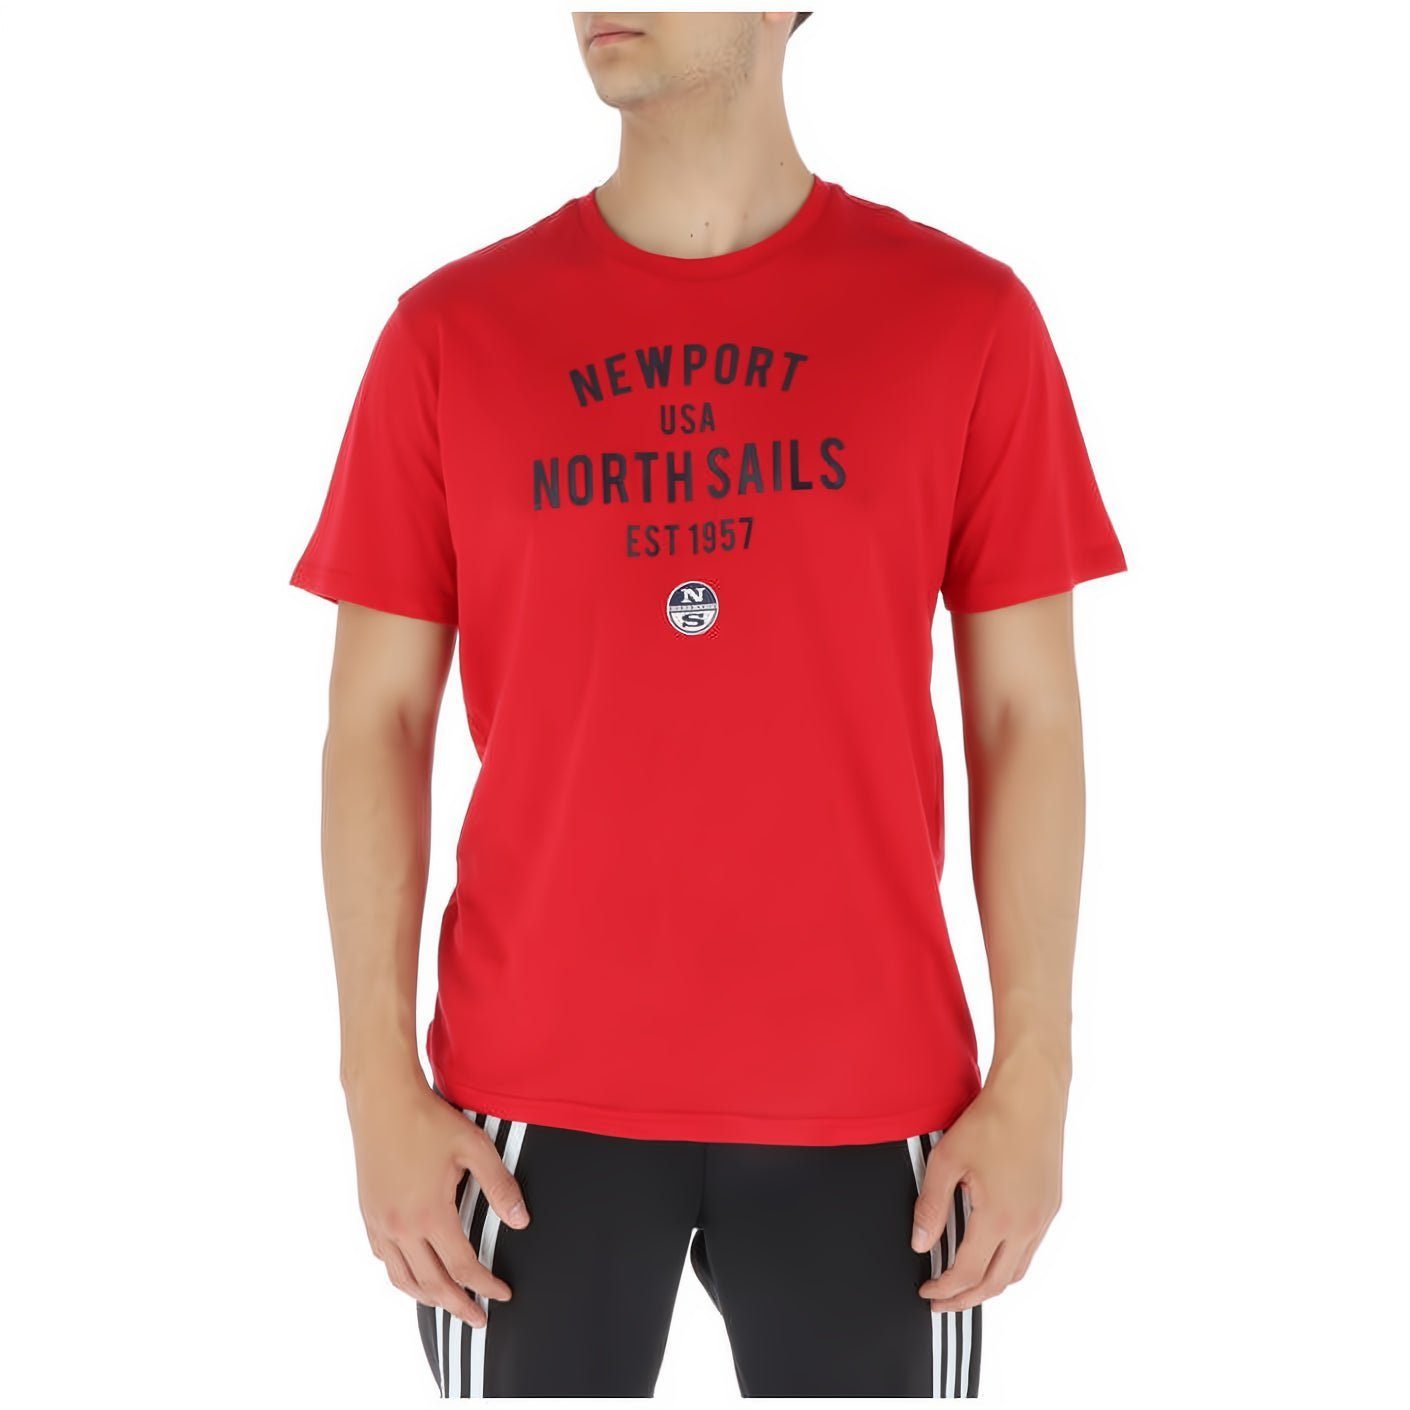 North Sails T-Shirt modische Herren T-Shirt Entdecke das modische North Sails, T-Shirt für Herren!